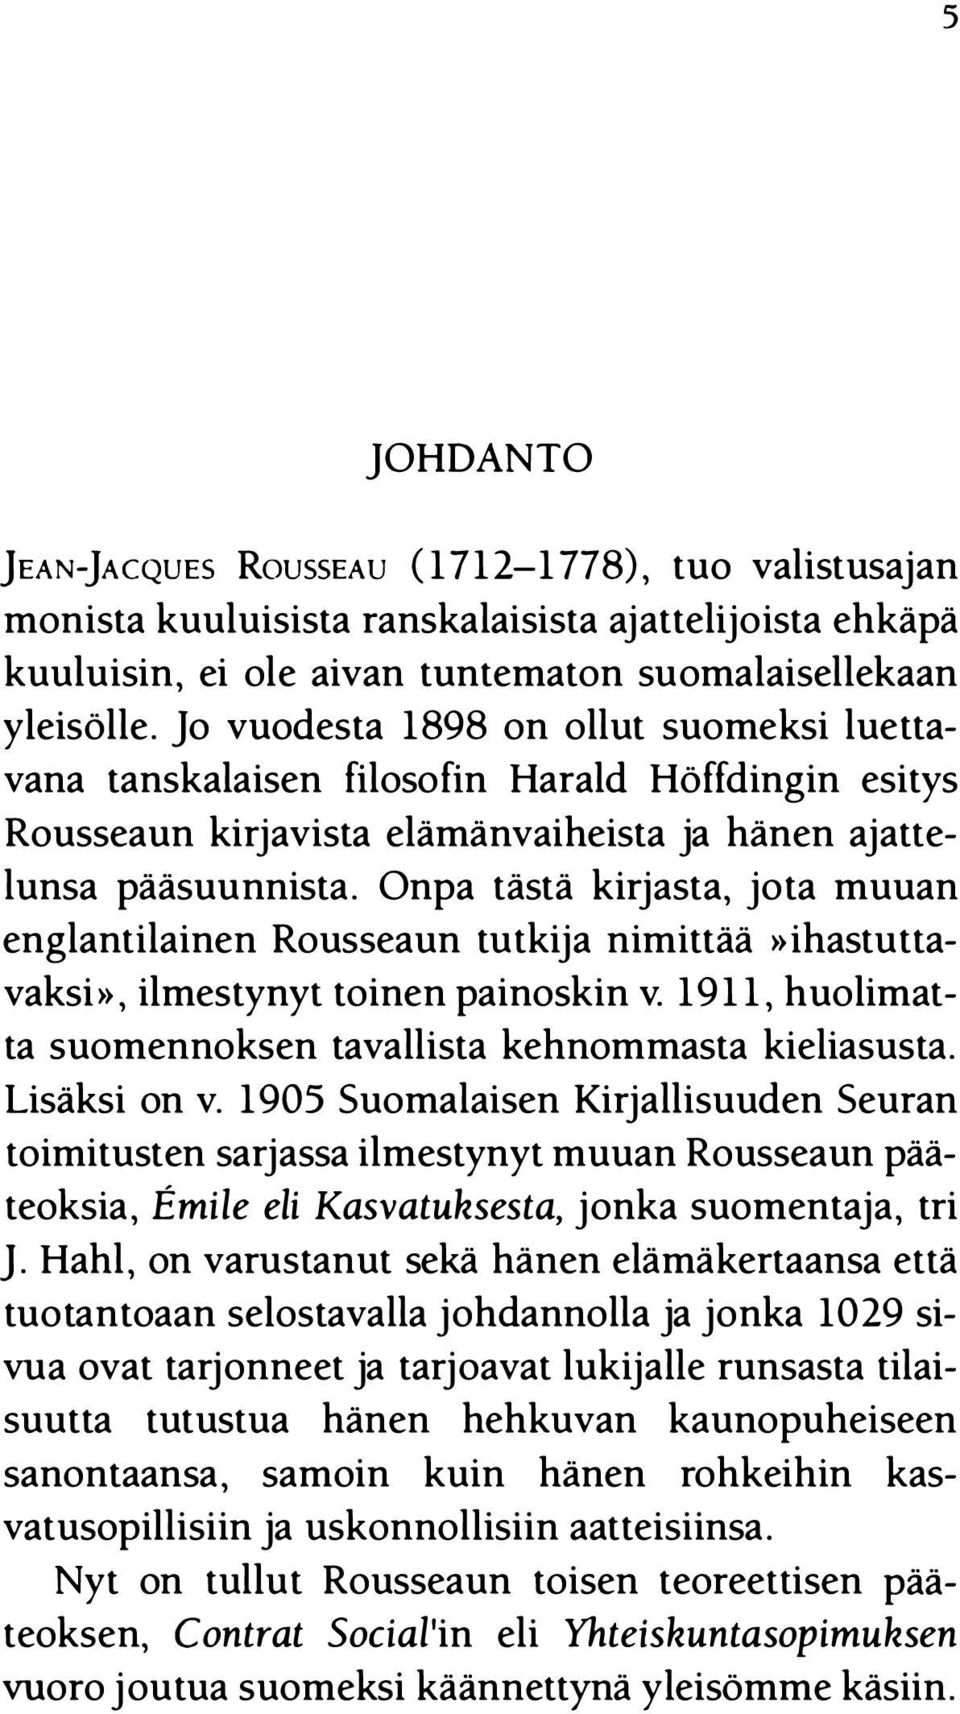 Onpa tästä kirjasta, jota muuan englantilainen Rousseaun tutkija nimittää»ihastuttavaksi», ilmestynyt toinen painoskin v. 1911, huolimatta suomennoksen tavallista kehnommasta kieliasusta.